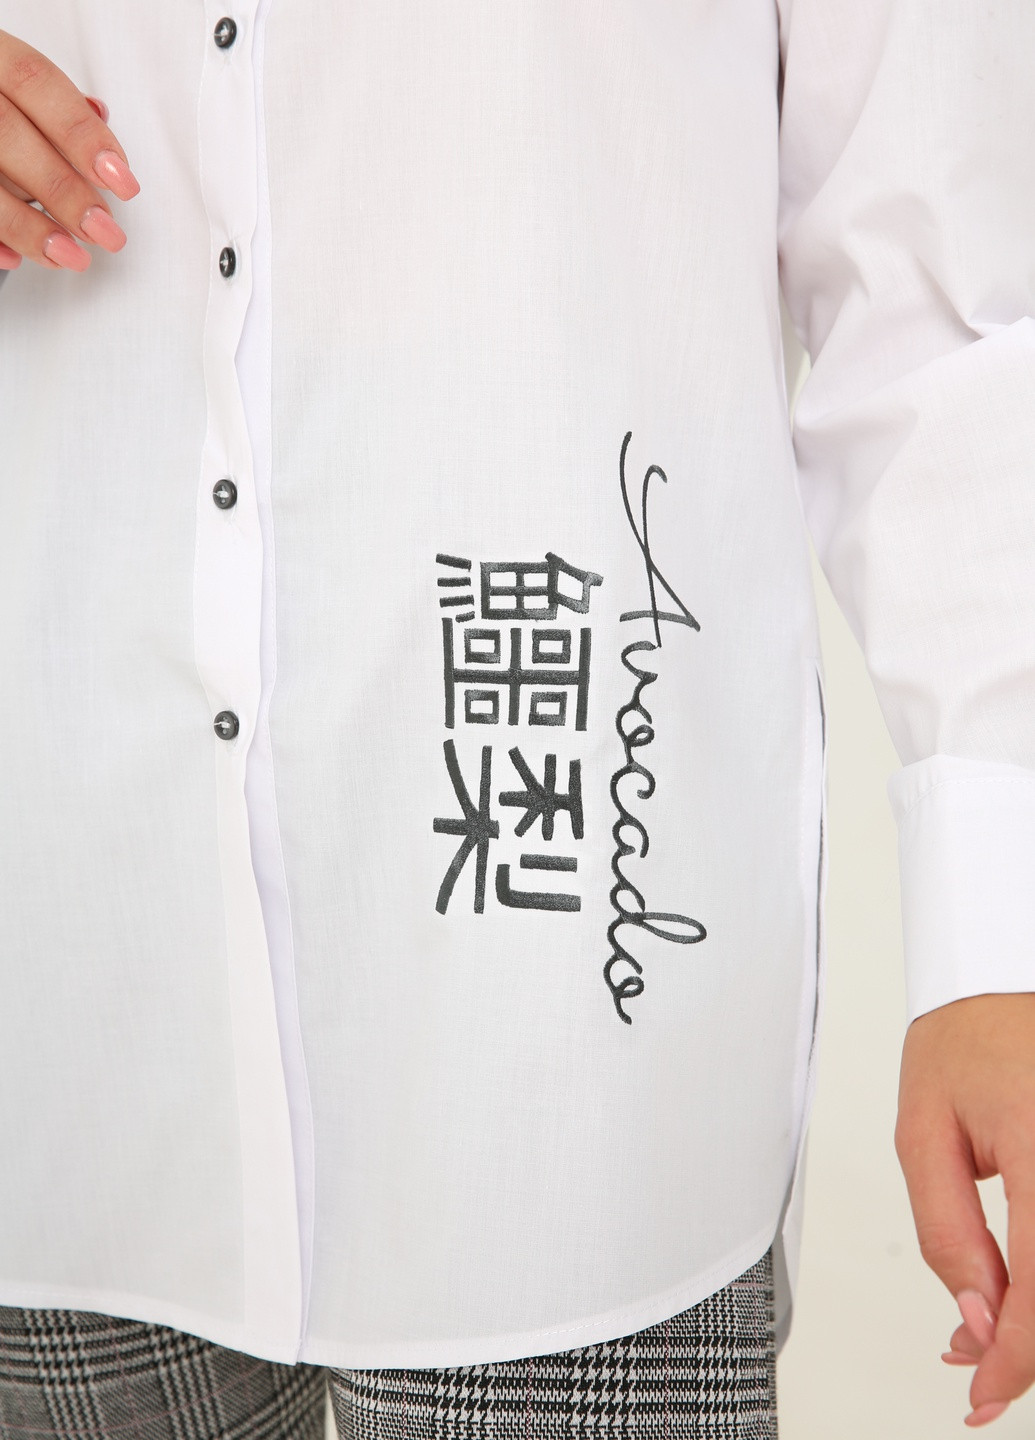 Белая демисезонная рубашка туника удлиненного кроя с вышивкой "авокадо иероглифы" INNOE Белая блуза